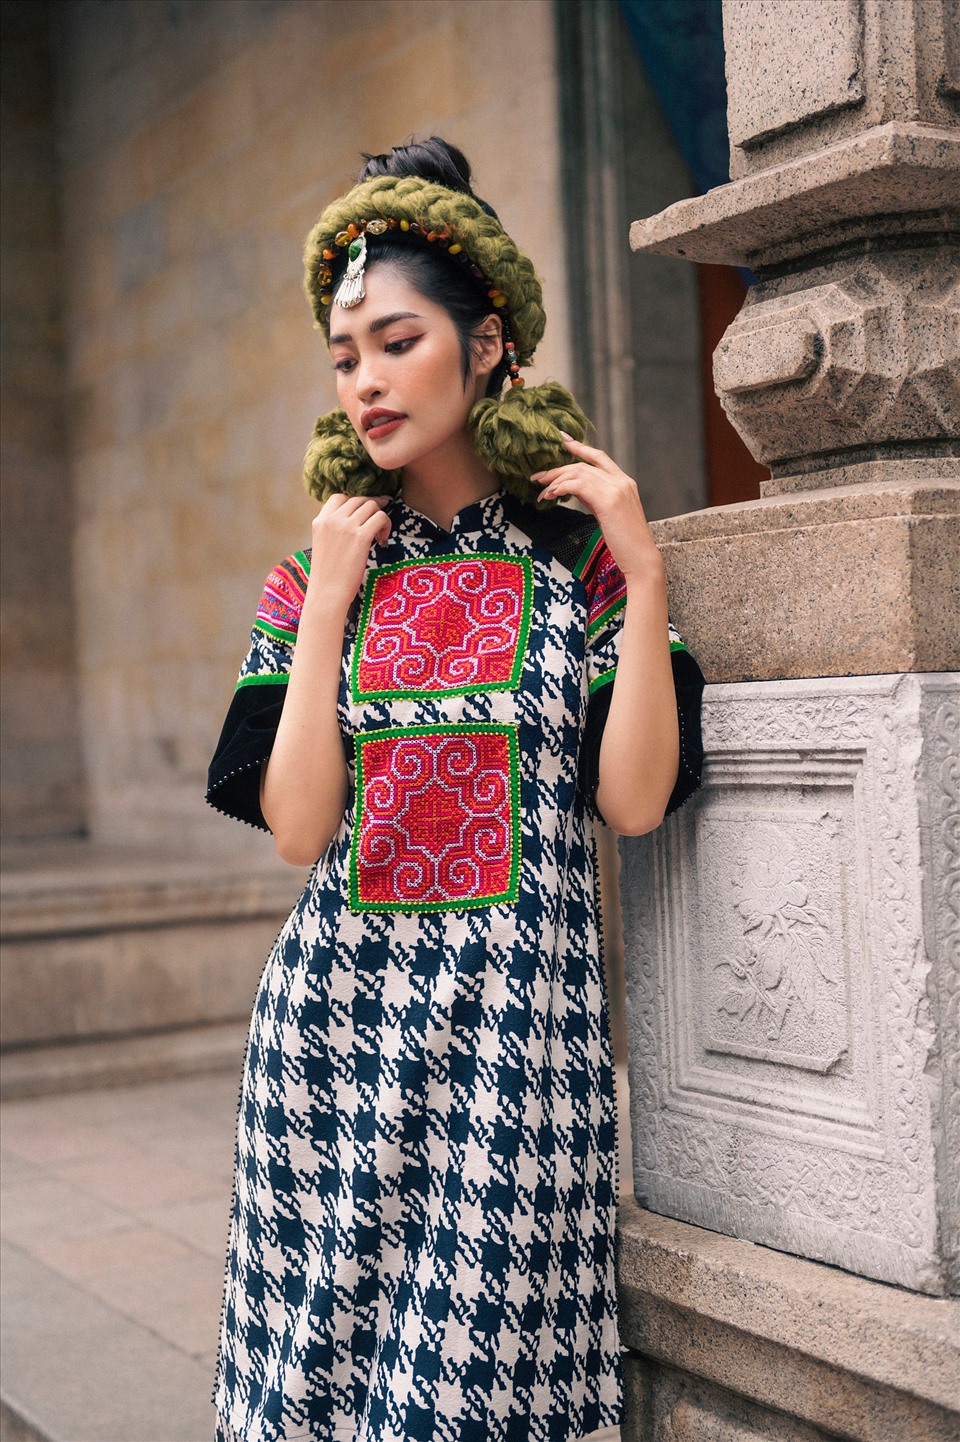 Nông Thúy Hằng có những tạo dáng nhẹ nhàng, chuyển động thanh thoát thể hiện hình ảnh cổ điển, duyên dáng của người phụ nữ Việt Nam, phù hợp với trang phục và ý tưởng của bộ ảnh.